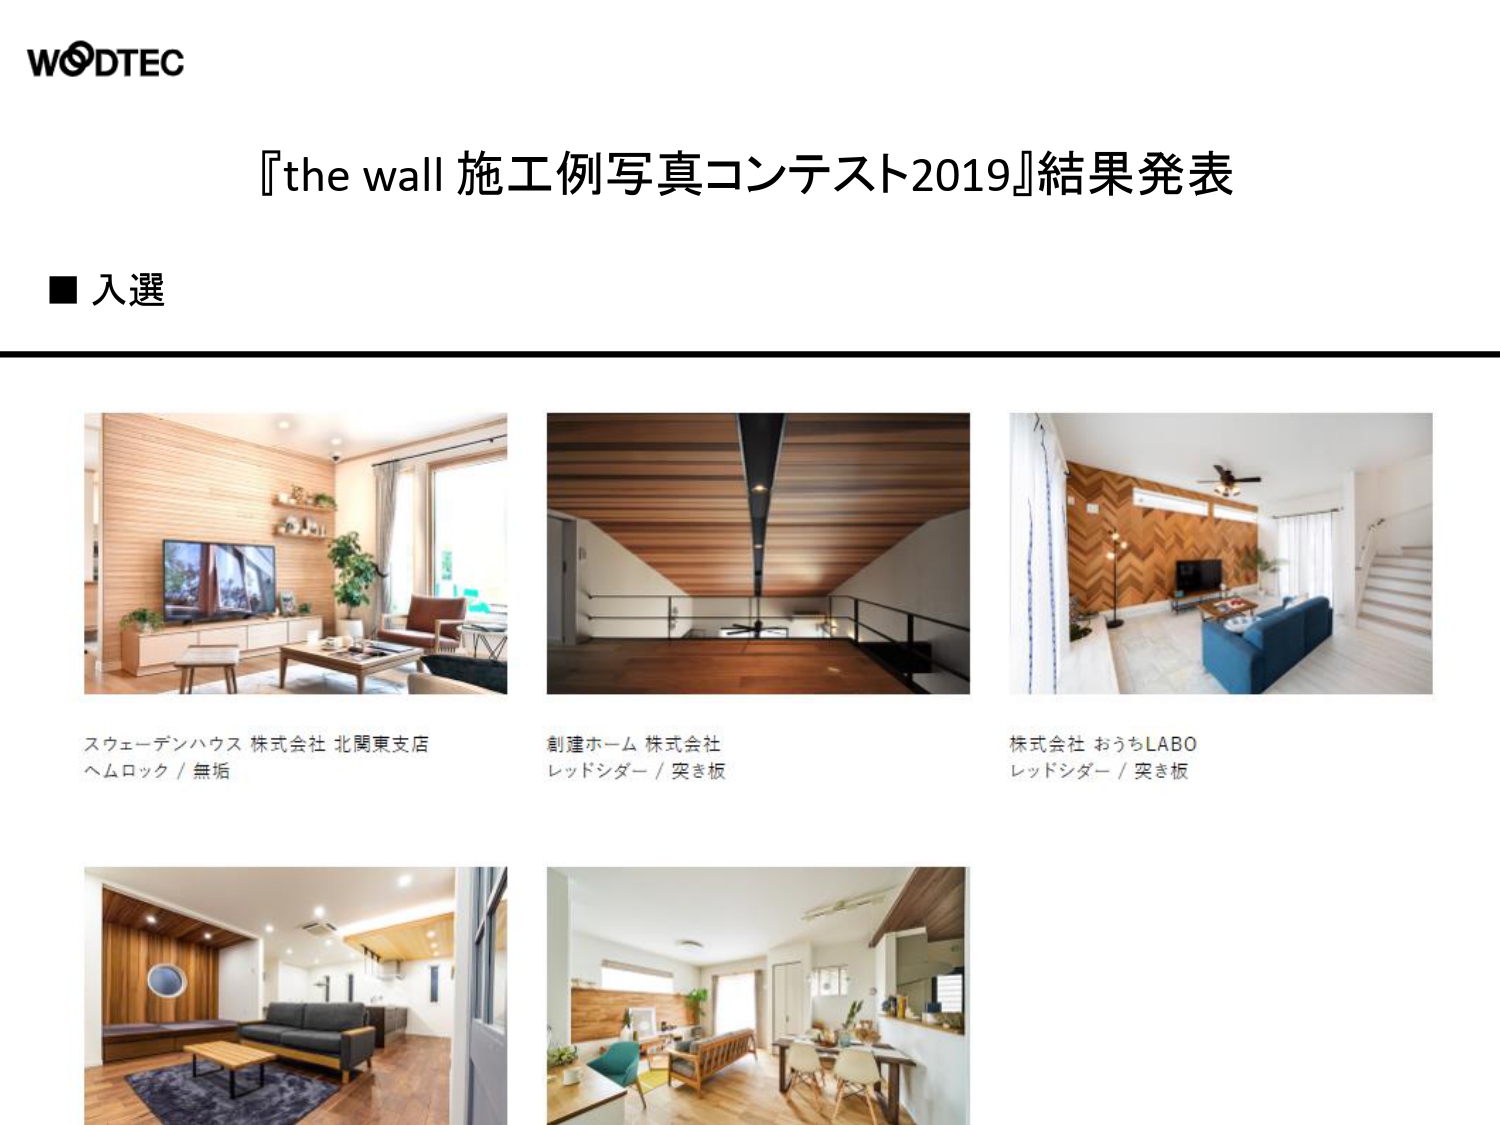 【WOODTEC】『the wall』施工例写真コンテスト2019入賞